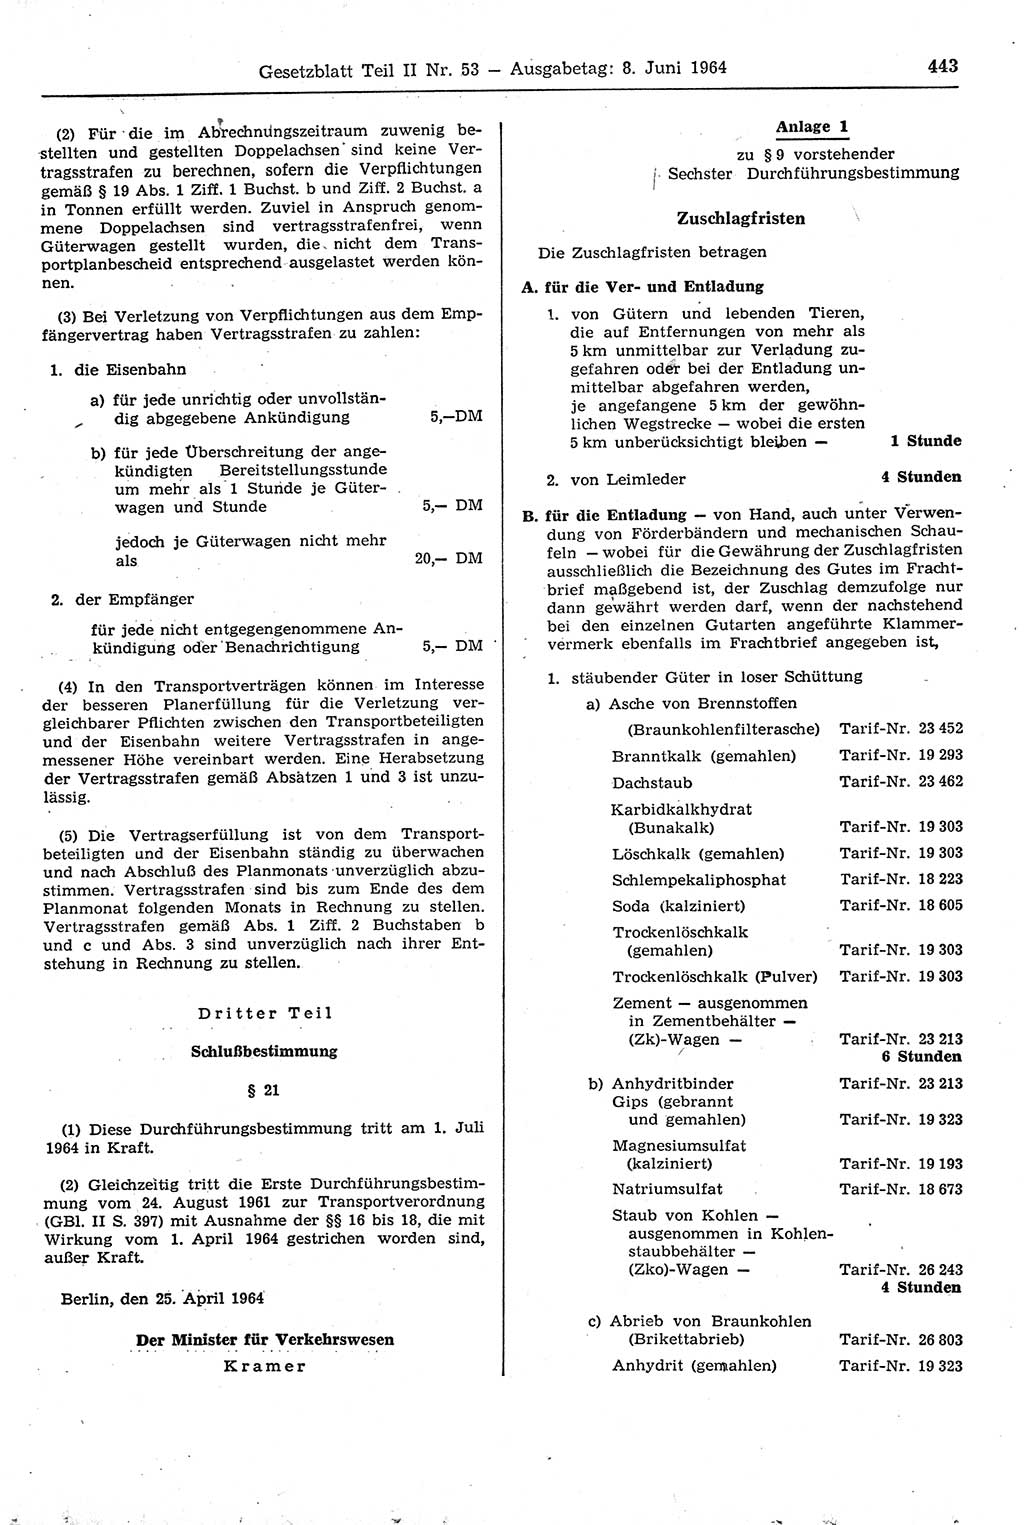 Gesetzblatt (GBl.) der Deutschen Demokratischen Republik (DDR) Teil ⅠⅠ 1964, Seite 443 (GBl. DDR ⅠⅠ 1964, S. 443)